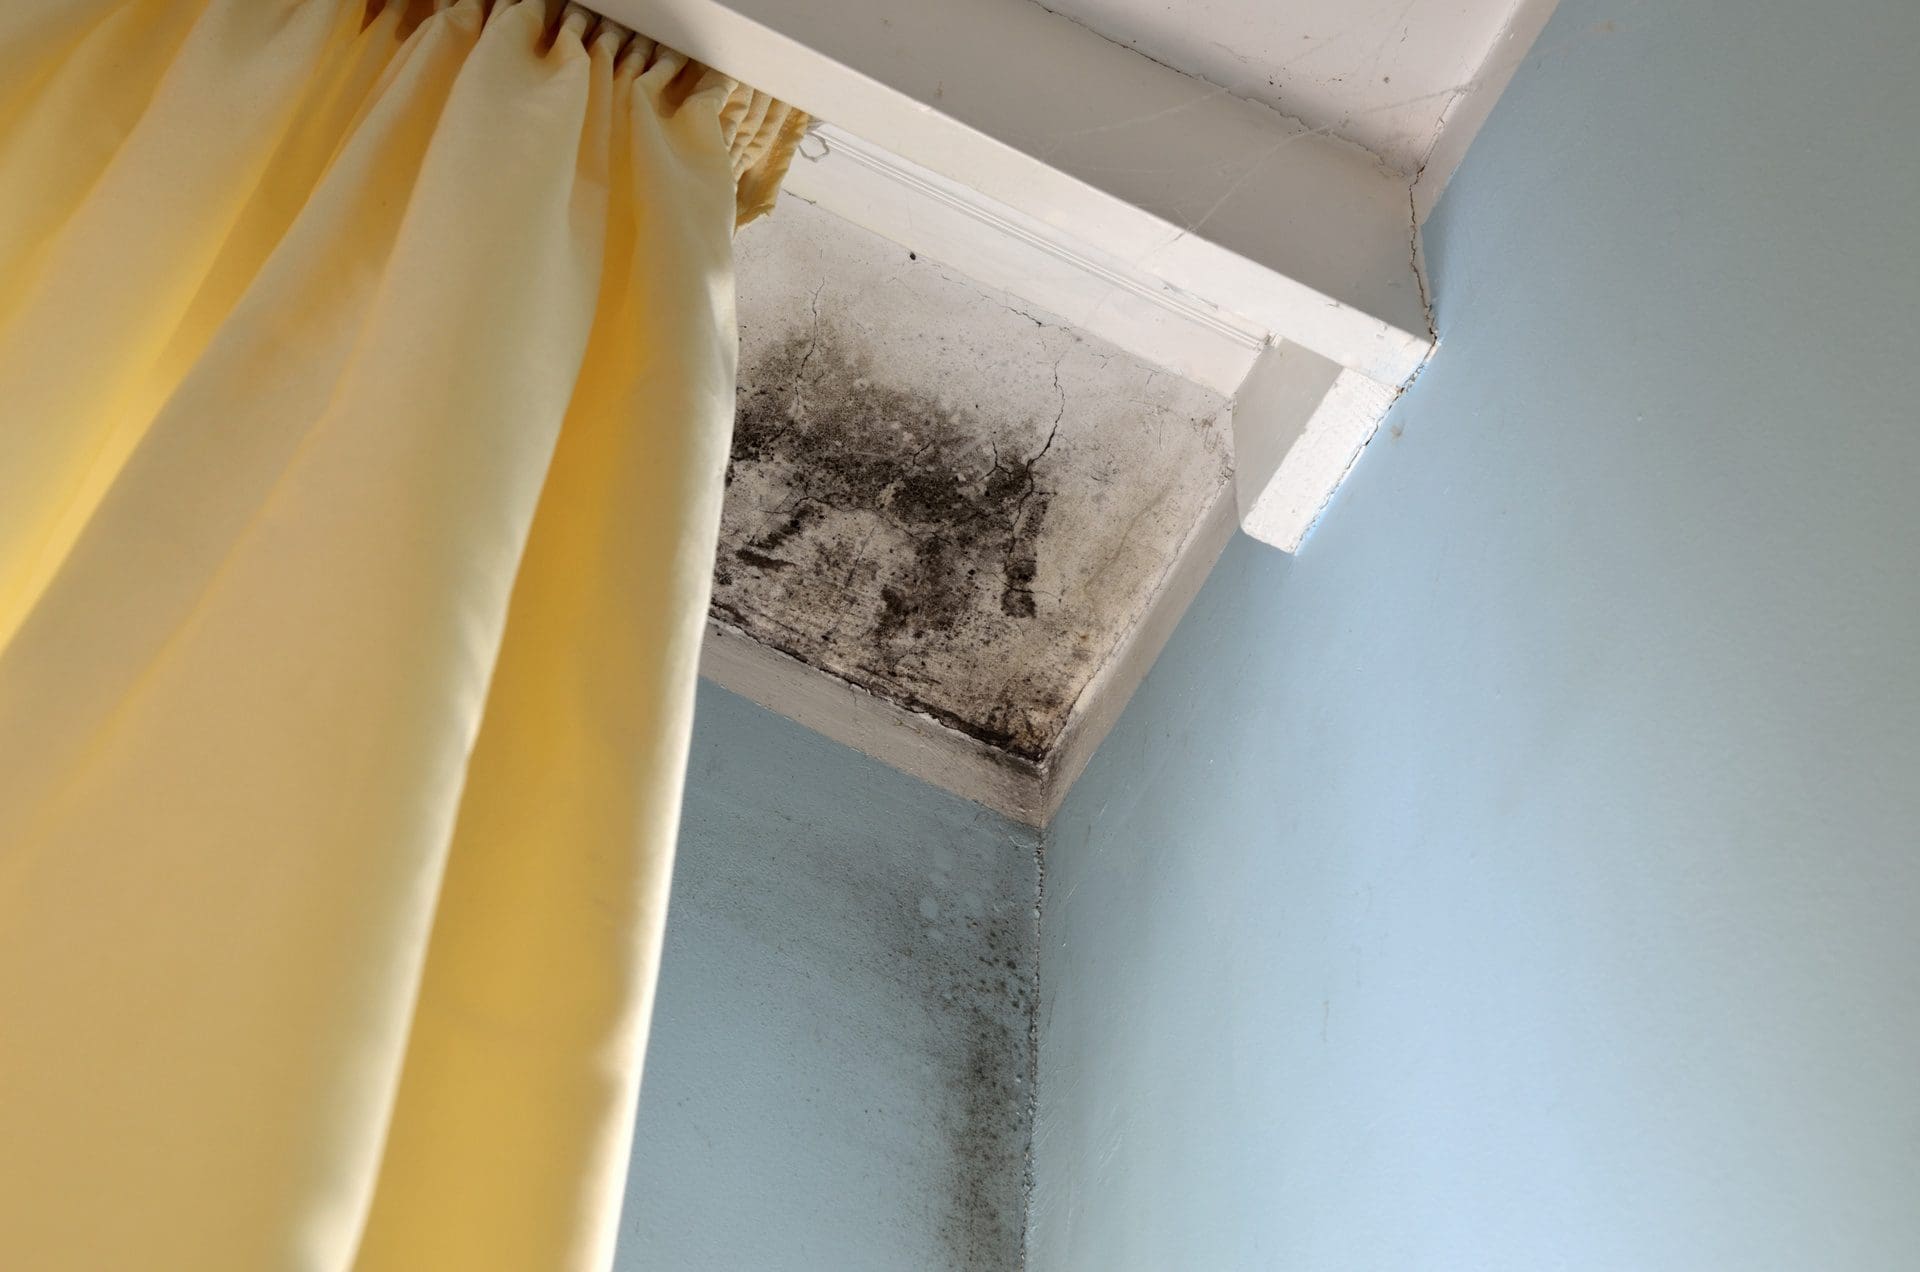 Schimmel an Decke hinter Vorhang - schlecht durchlüftete Bereiche, gerade im Umfeld von Außenwänden und Fenstern neigen häufig(er) zu Schimmelbefall (© branislav / stock.adobe.com)